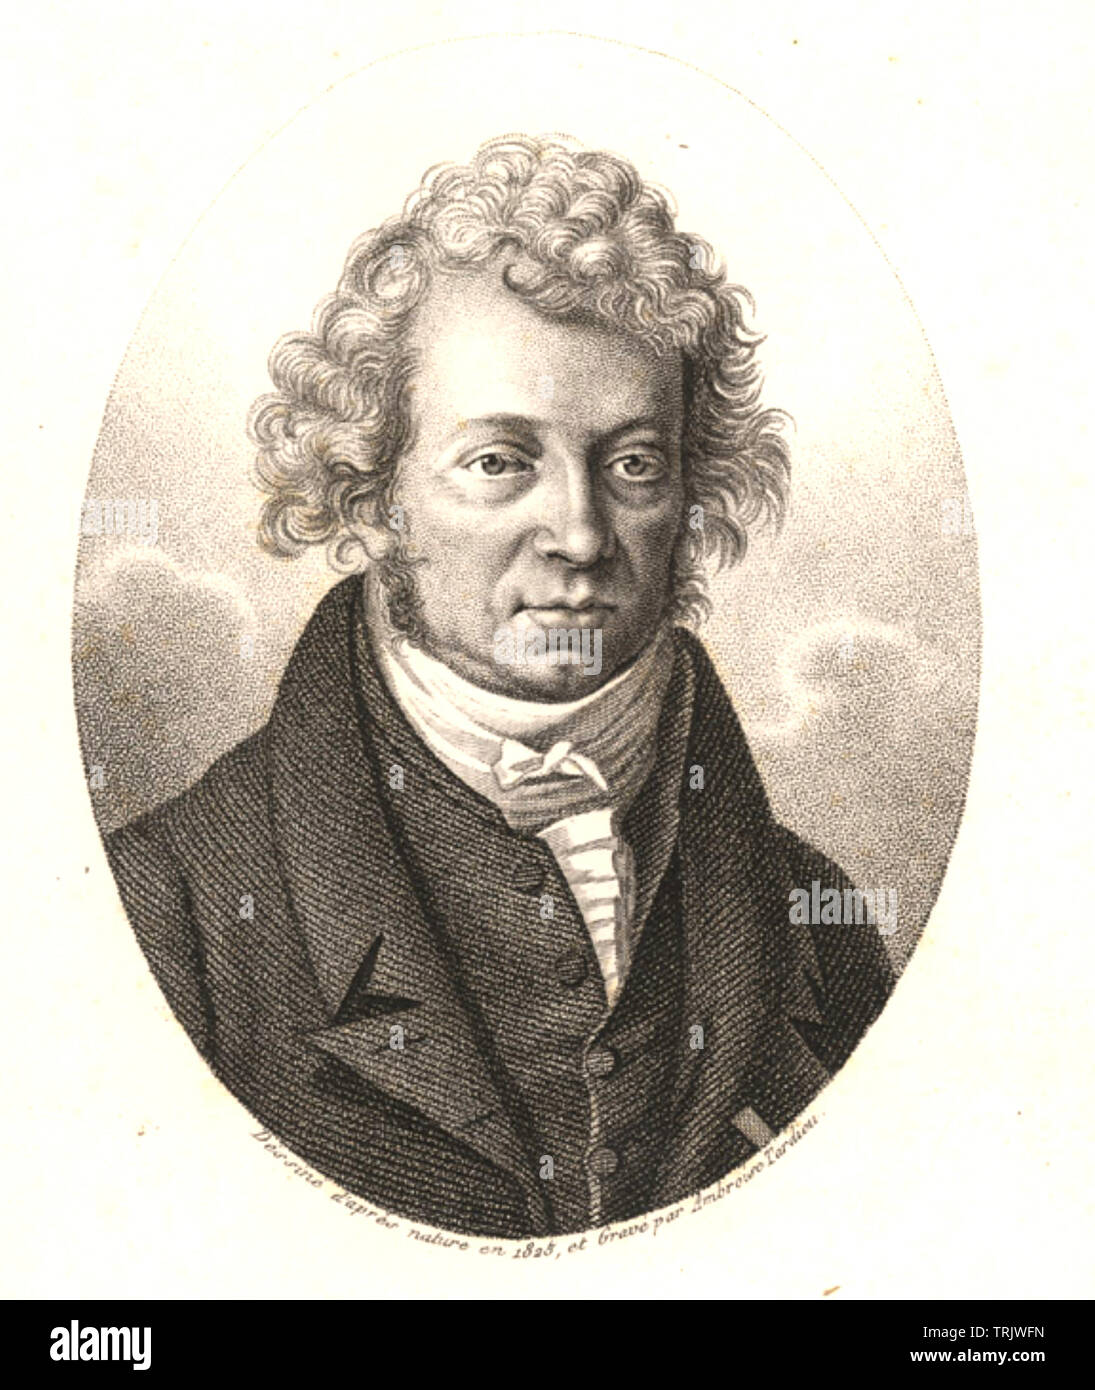 ANDRÉ-MARIE Le AMPĖRE (1775-1836) physicien et mathématicien français Banque D'Images